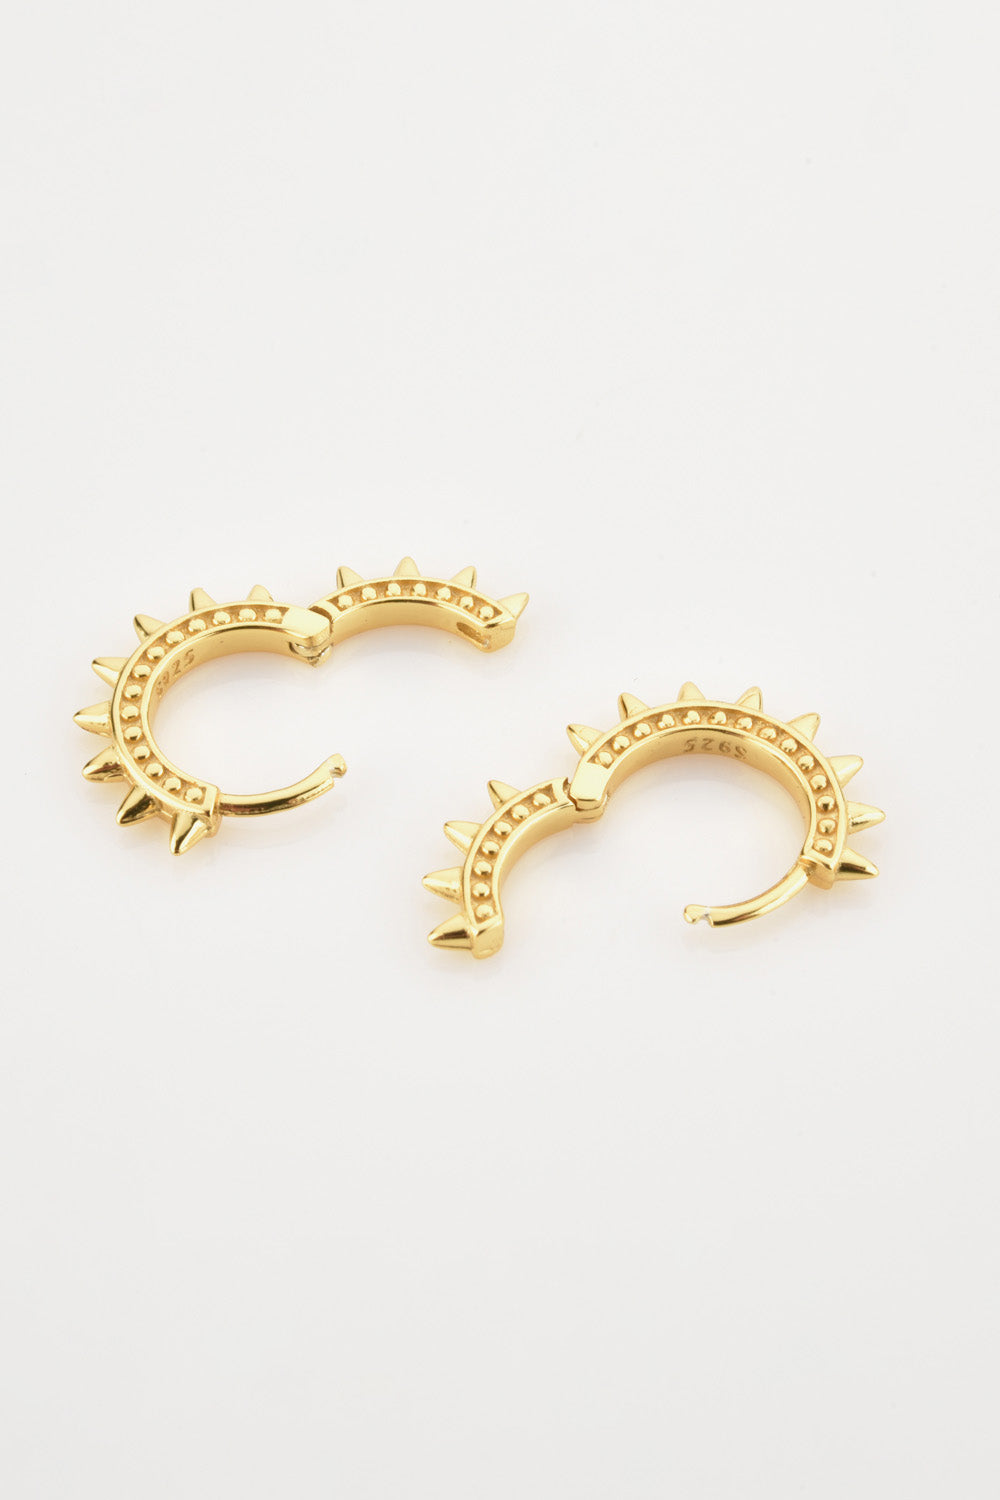 - 925 Sterling Silver Huggie Earrings - earrings at TFC&H Co.